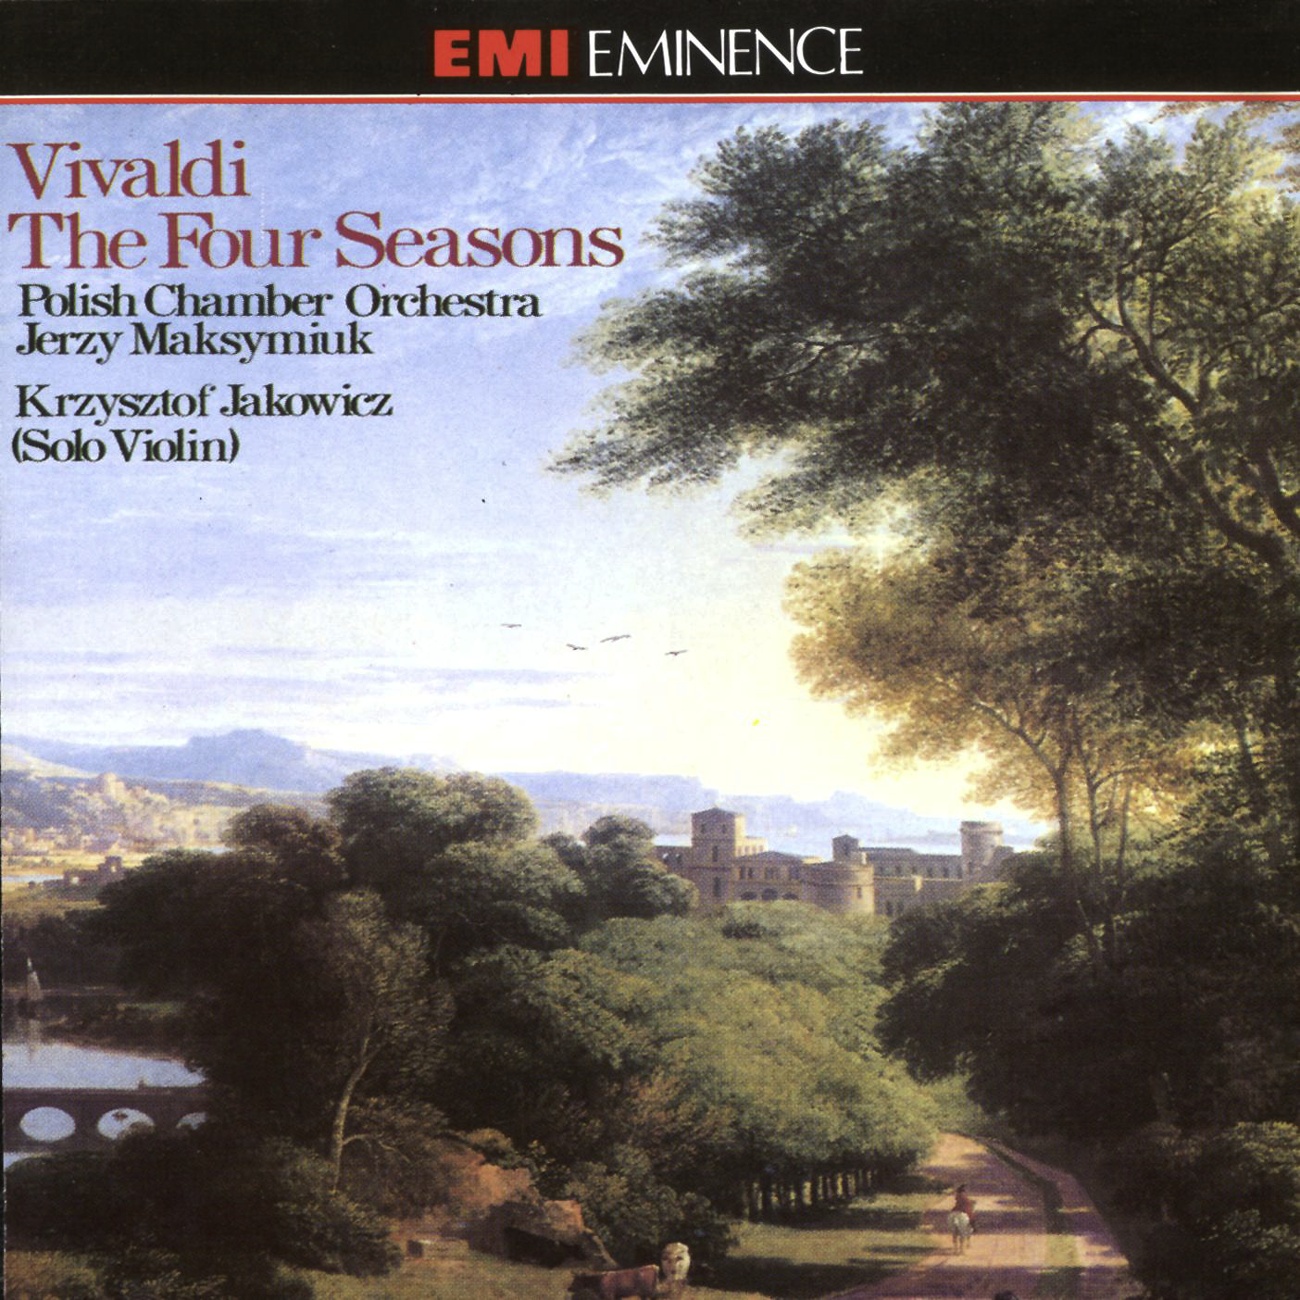 The Four Seasons Op. 8 Nos. 1-4 (1990 Digital Remaster), Concerto No. 1 in E (La primavera/ Spring) RV269 (Op. 8 No. 1): I.   Al